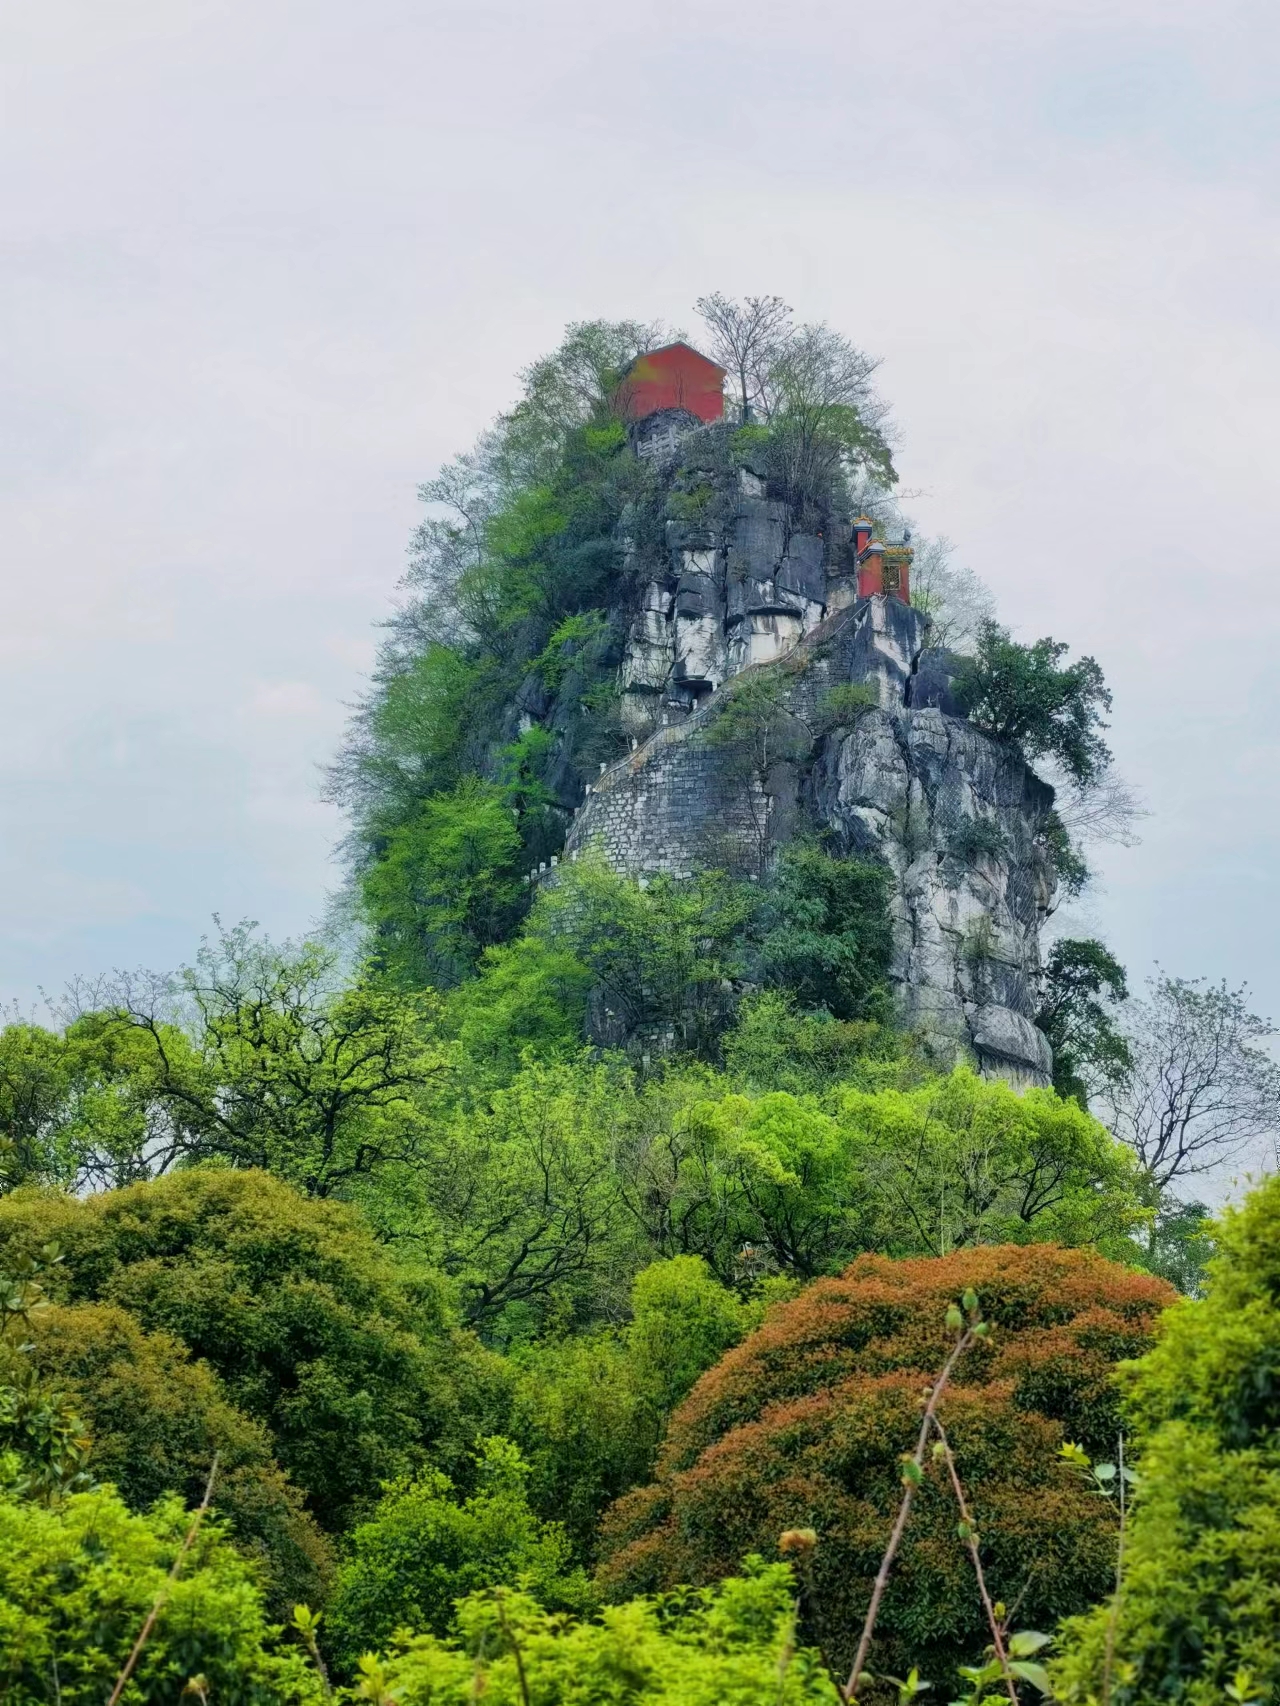 【携程攻略】桂林独秀峰王城景区景点,还可以吧啊，导游讲解挺亲切的，看就是体验一下曾经科考，自己琢磨